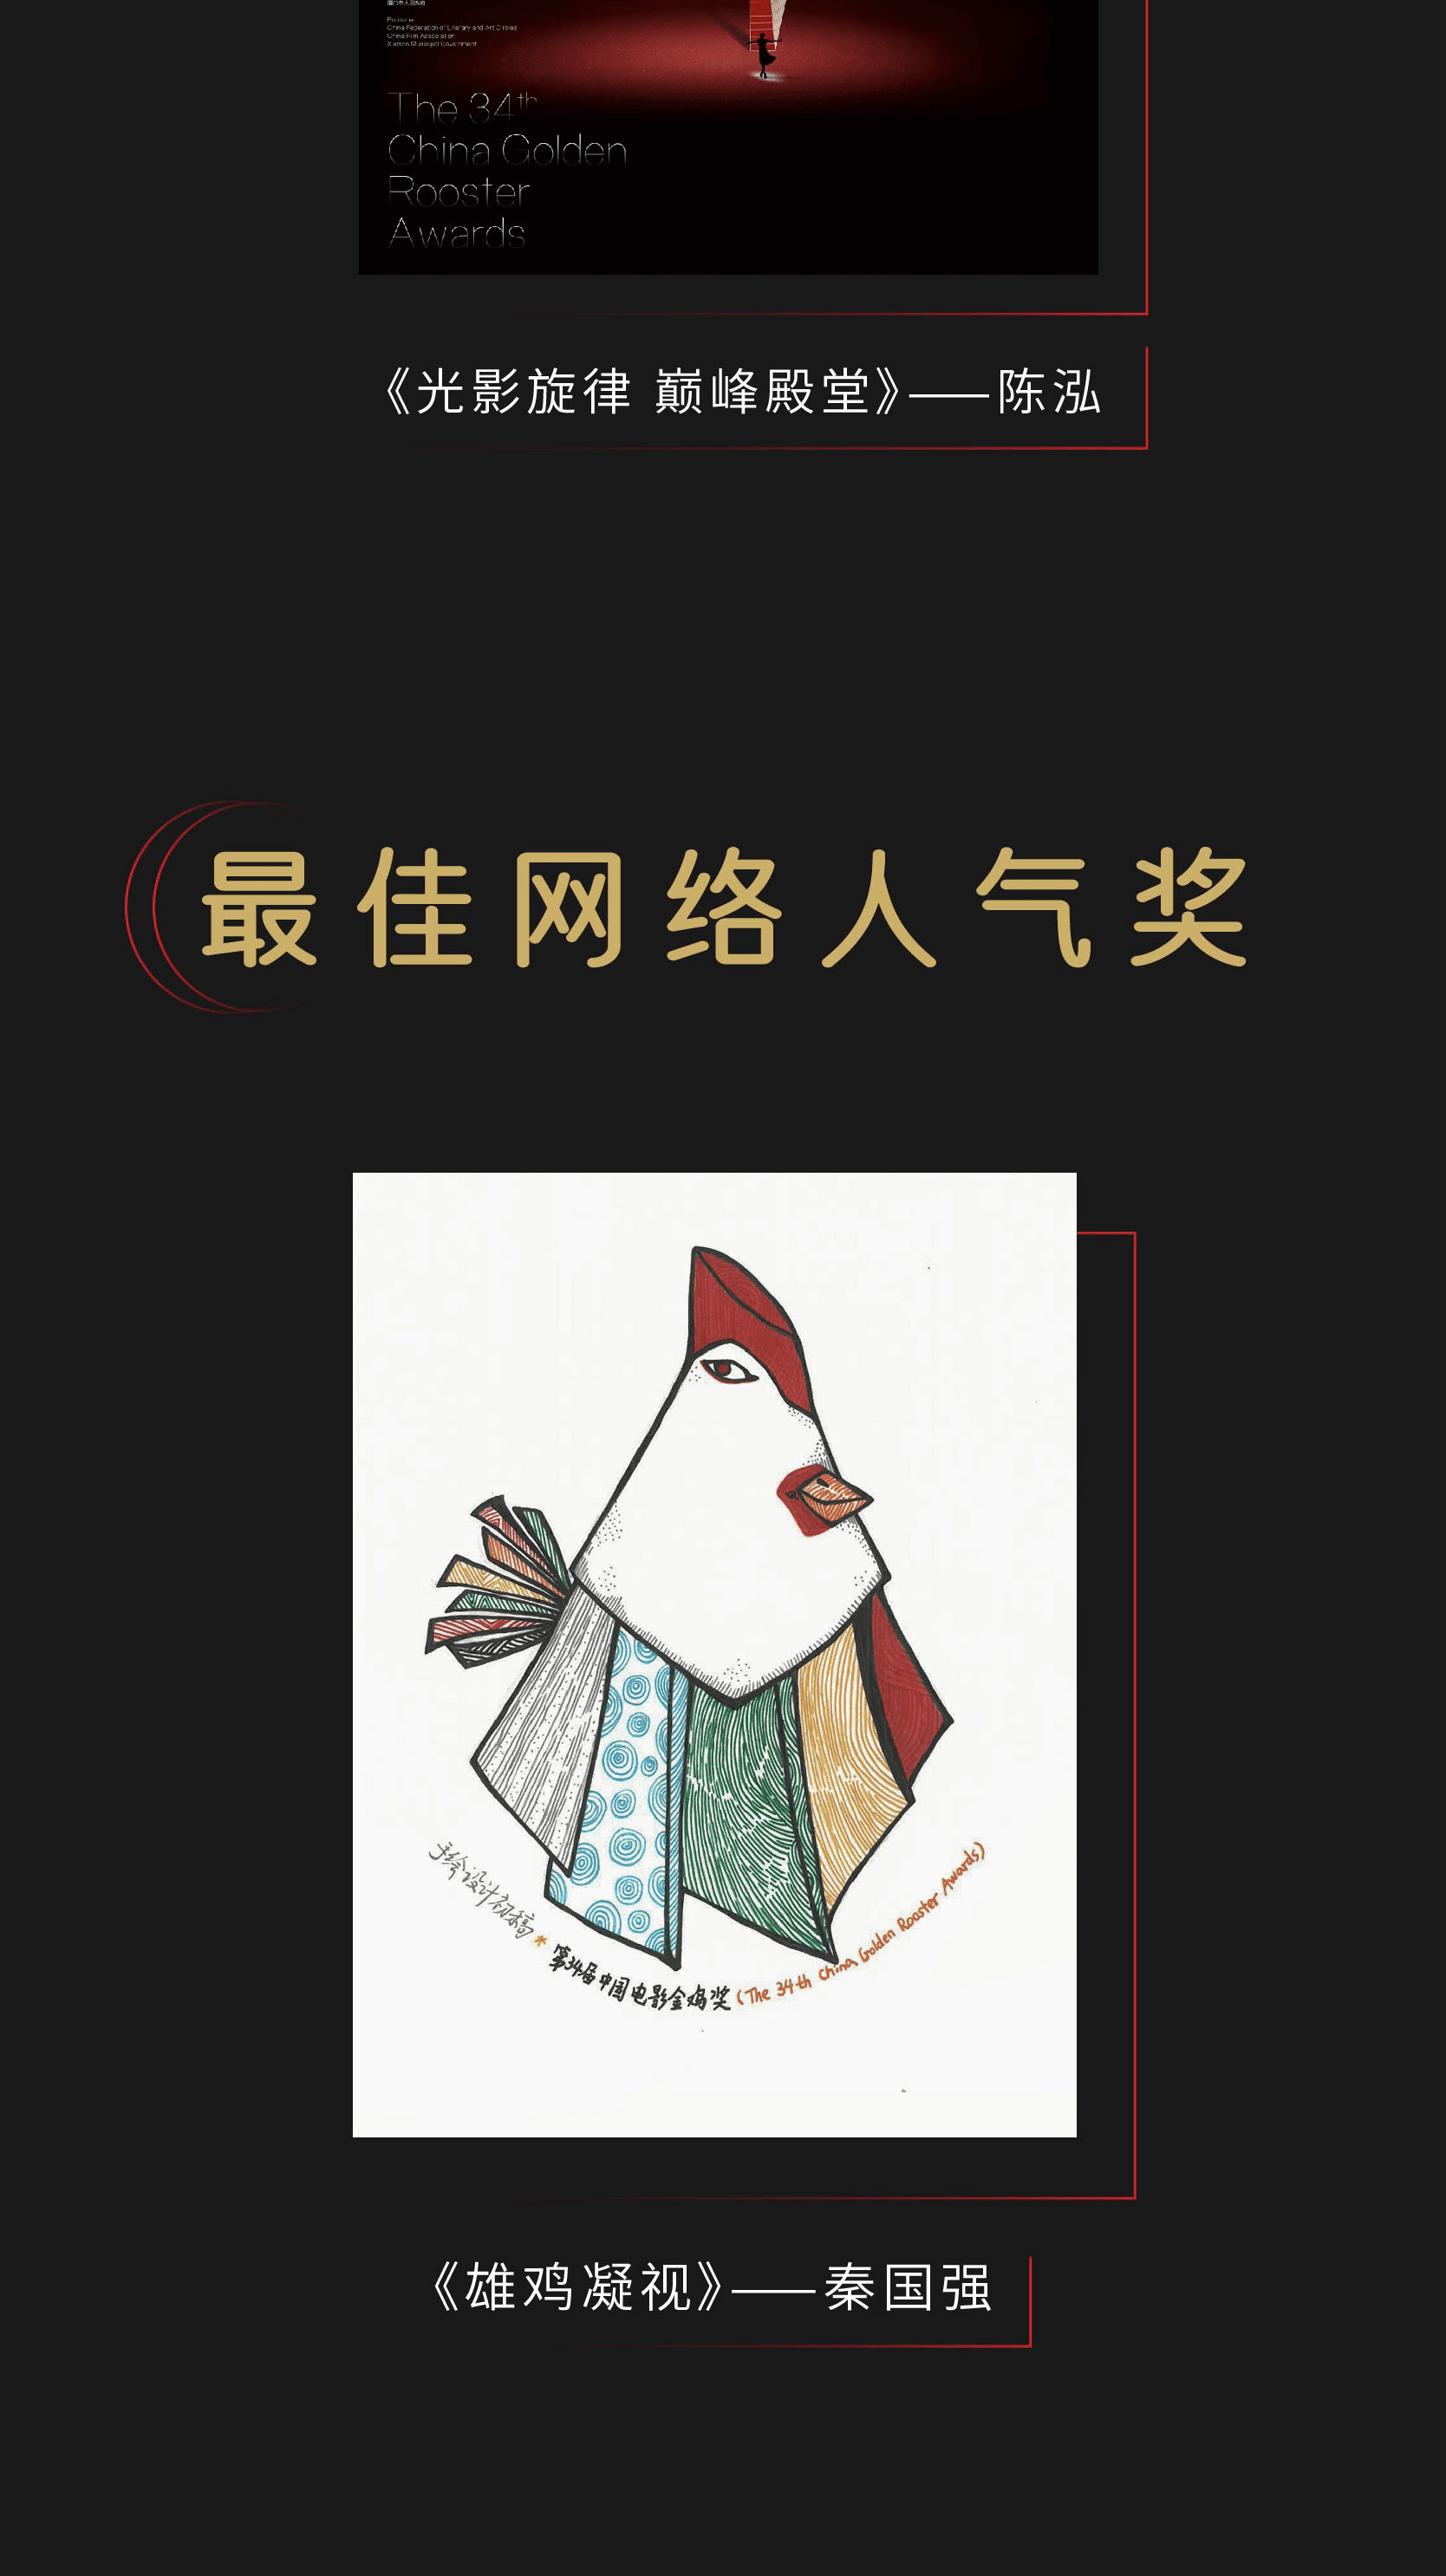 2021第34届中国电影金鸡奖海报设计大赛，获奖名单揭晓